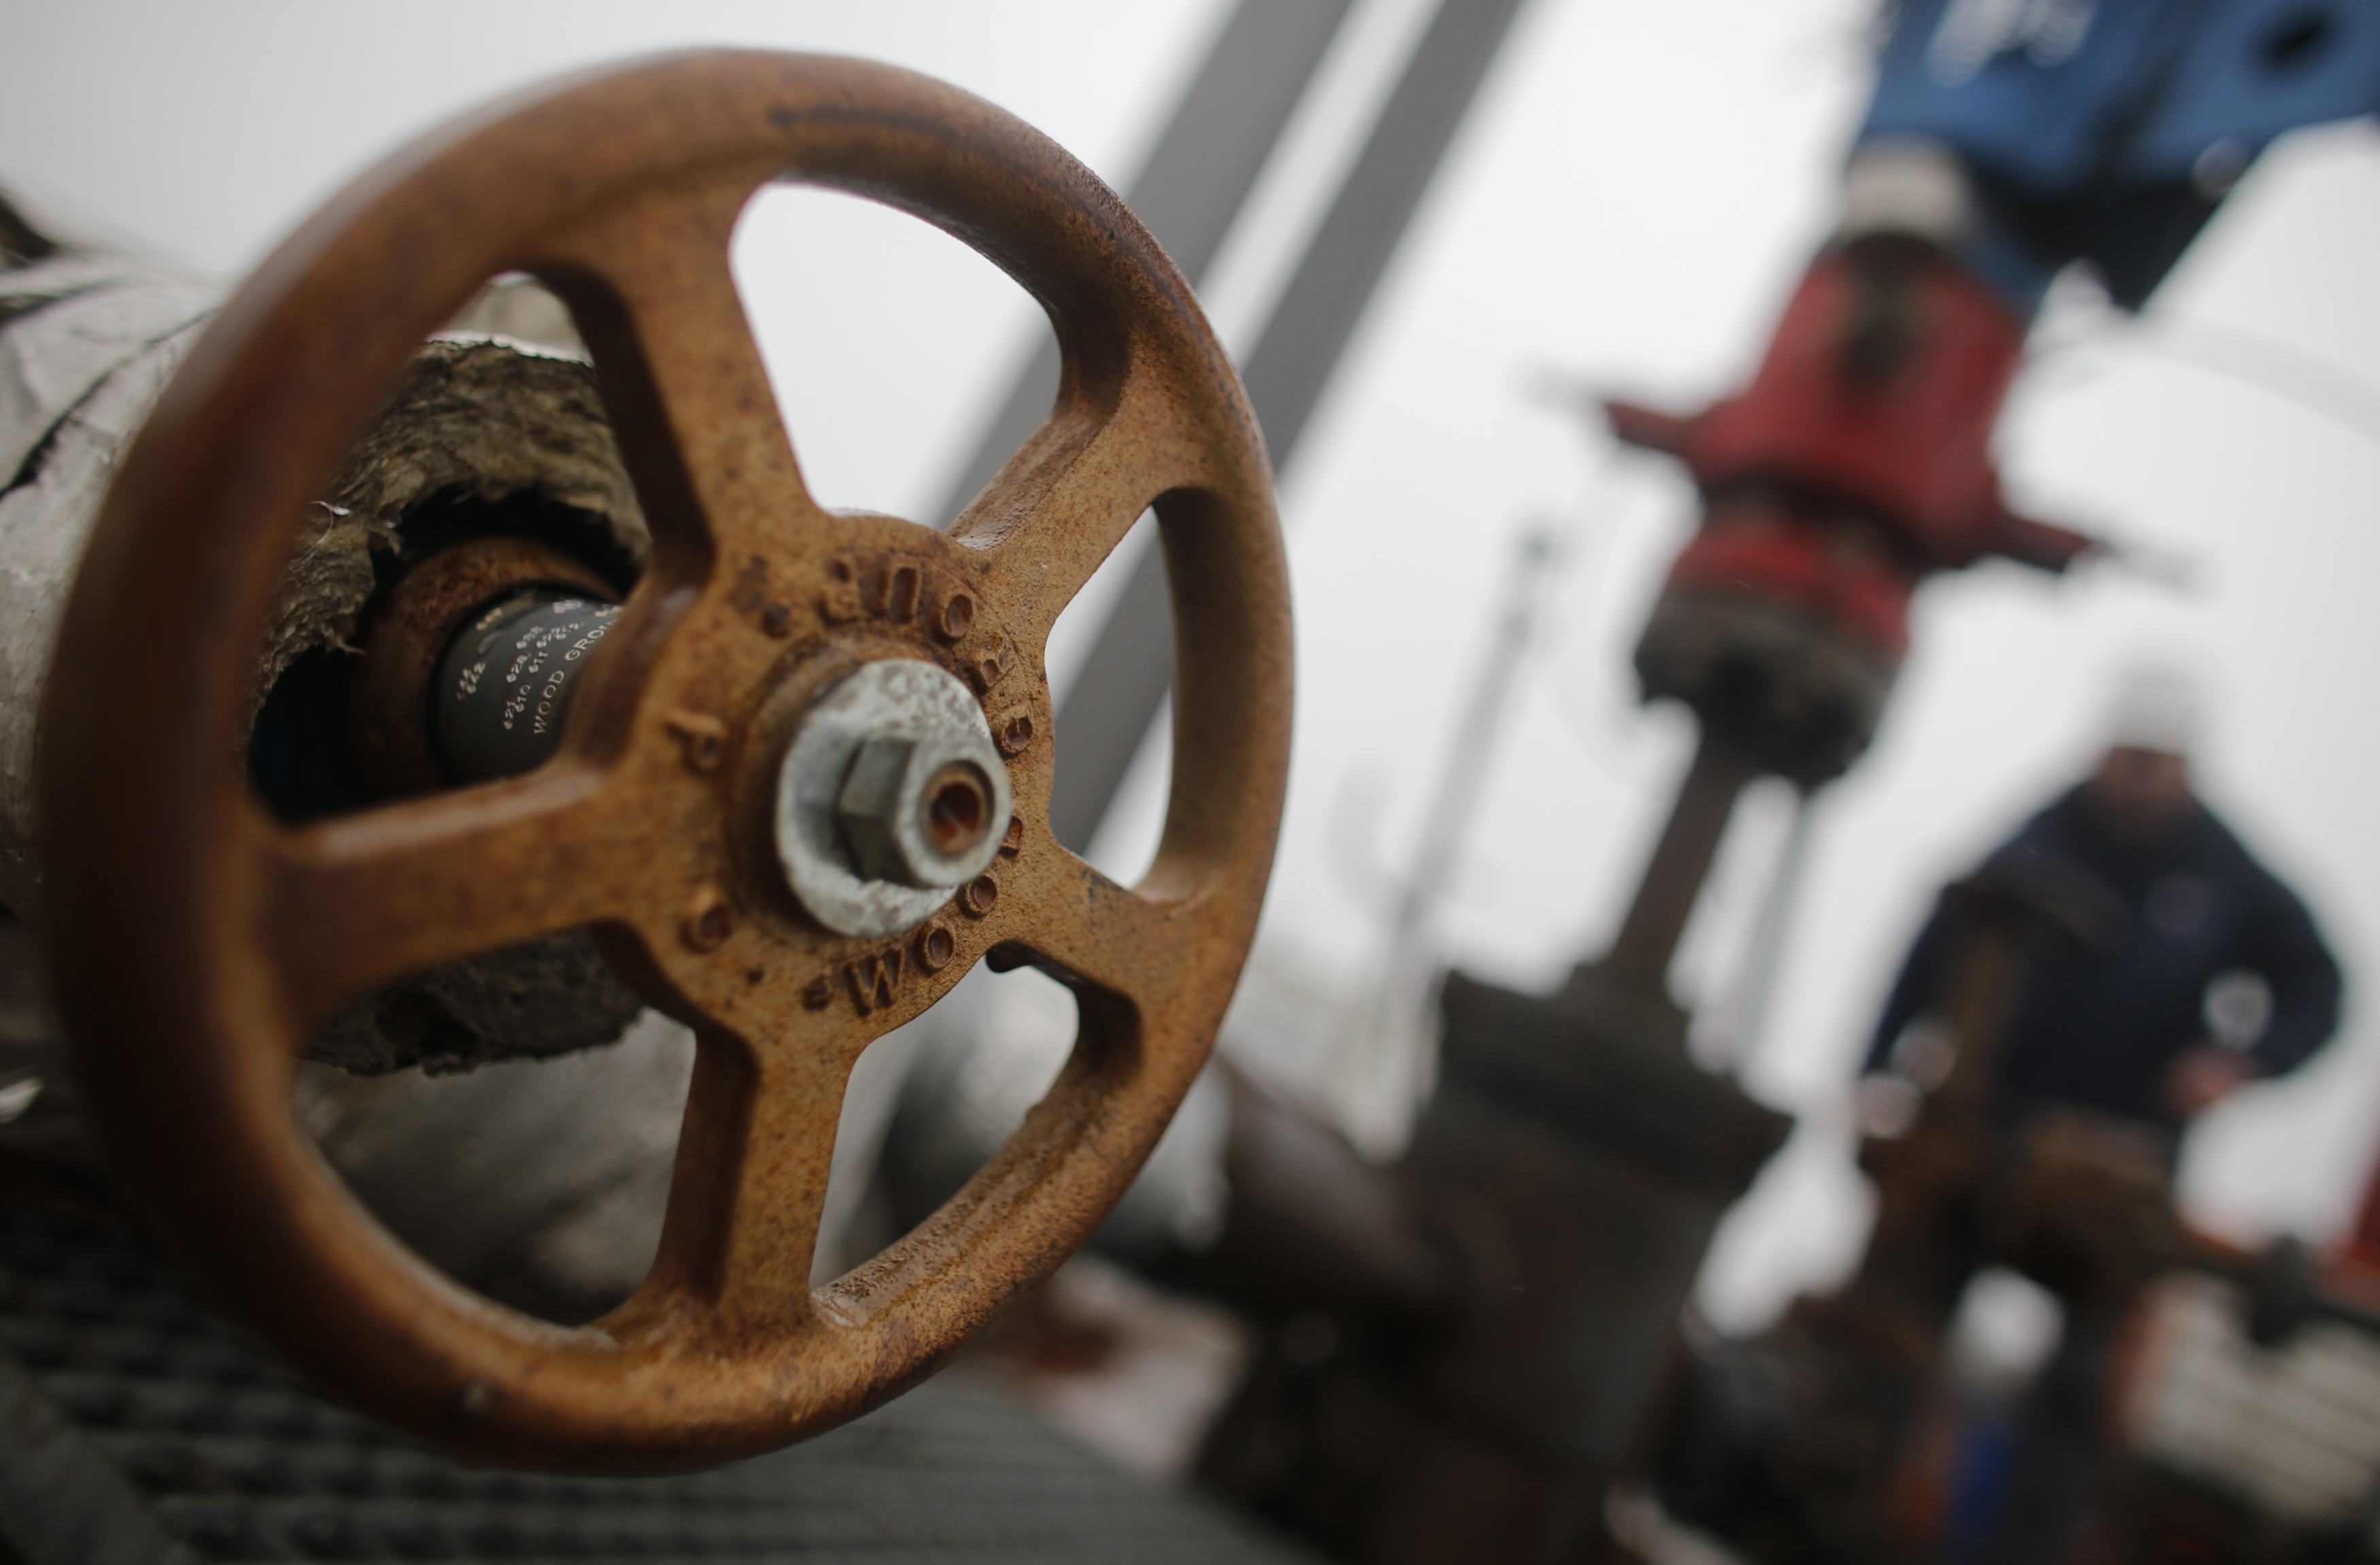 Le russe Gazprom ferme drastiquement le robinet de gaz à l'Italie et l'Autriche